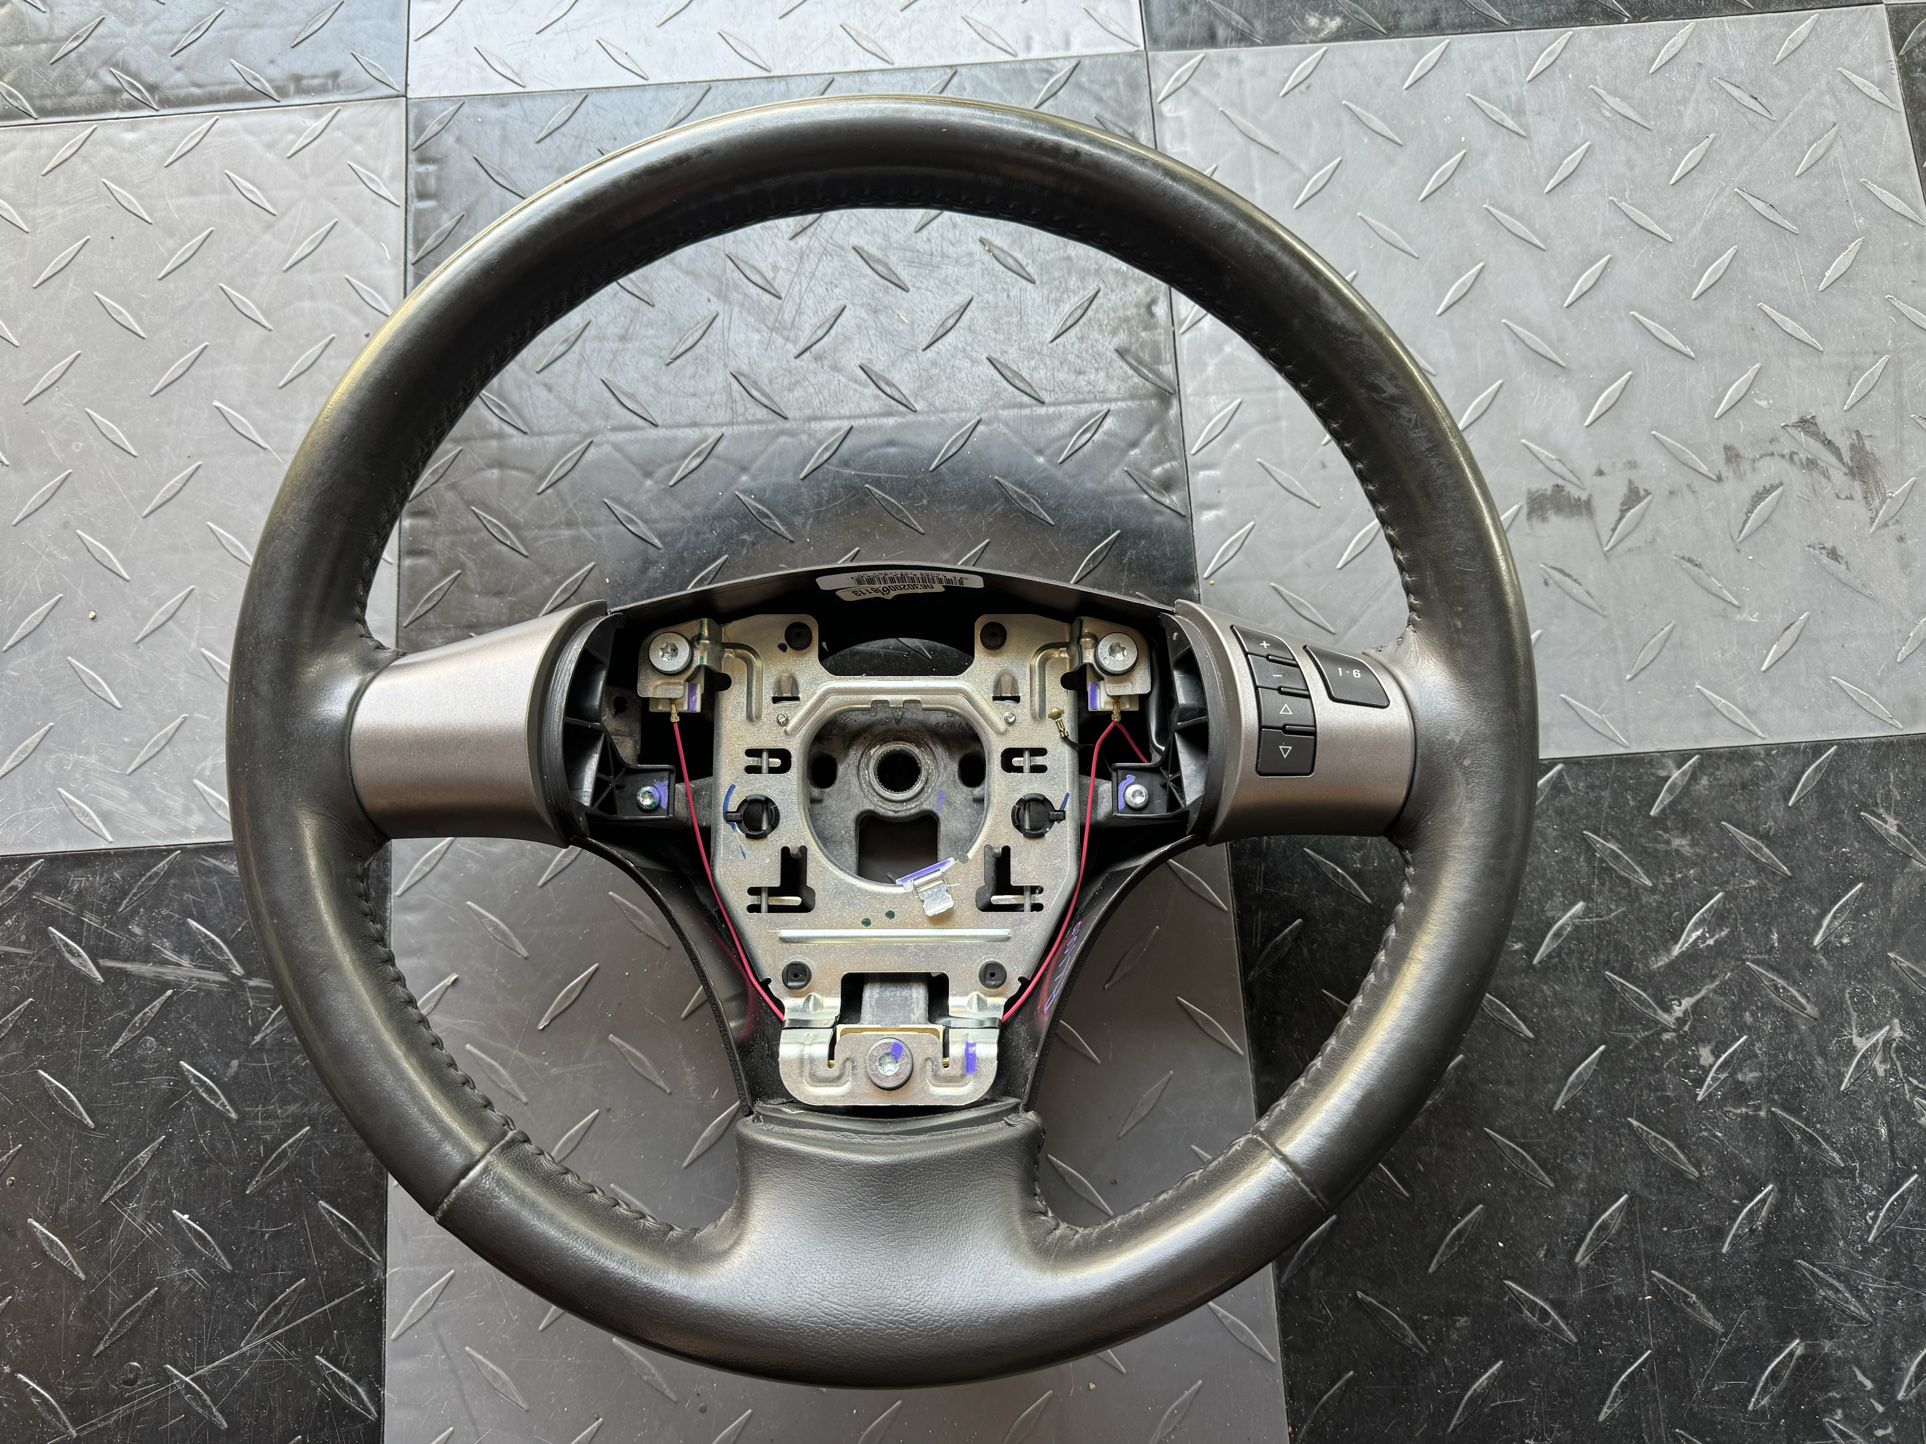 Corvette C6 Steering Wheel With Radio Controls